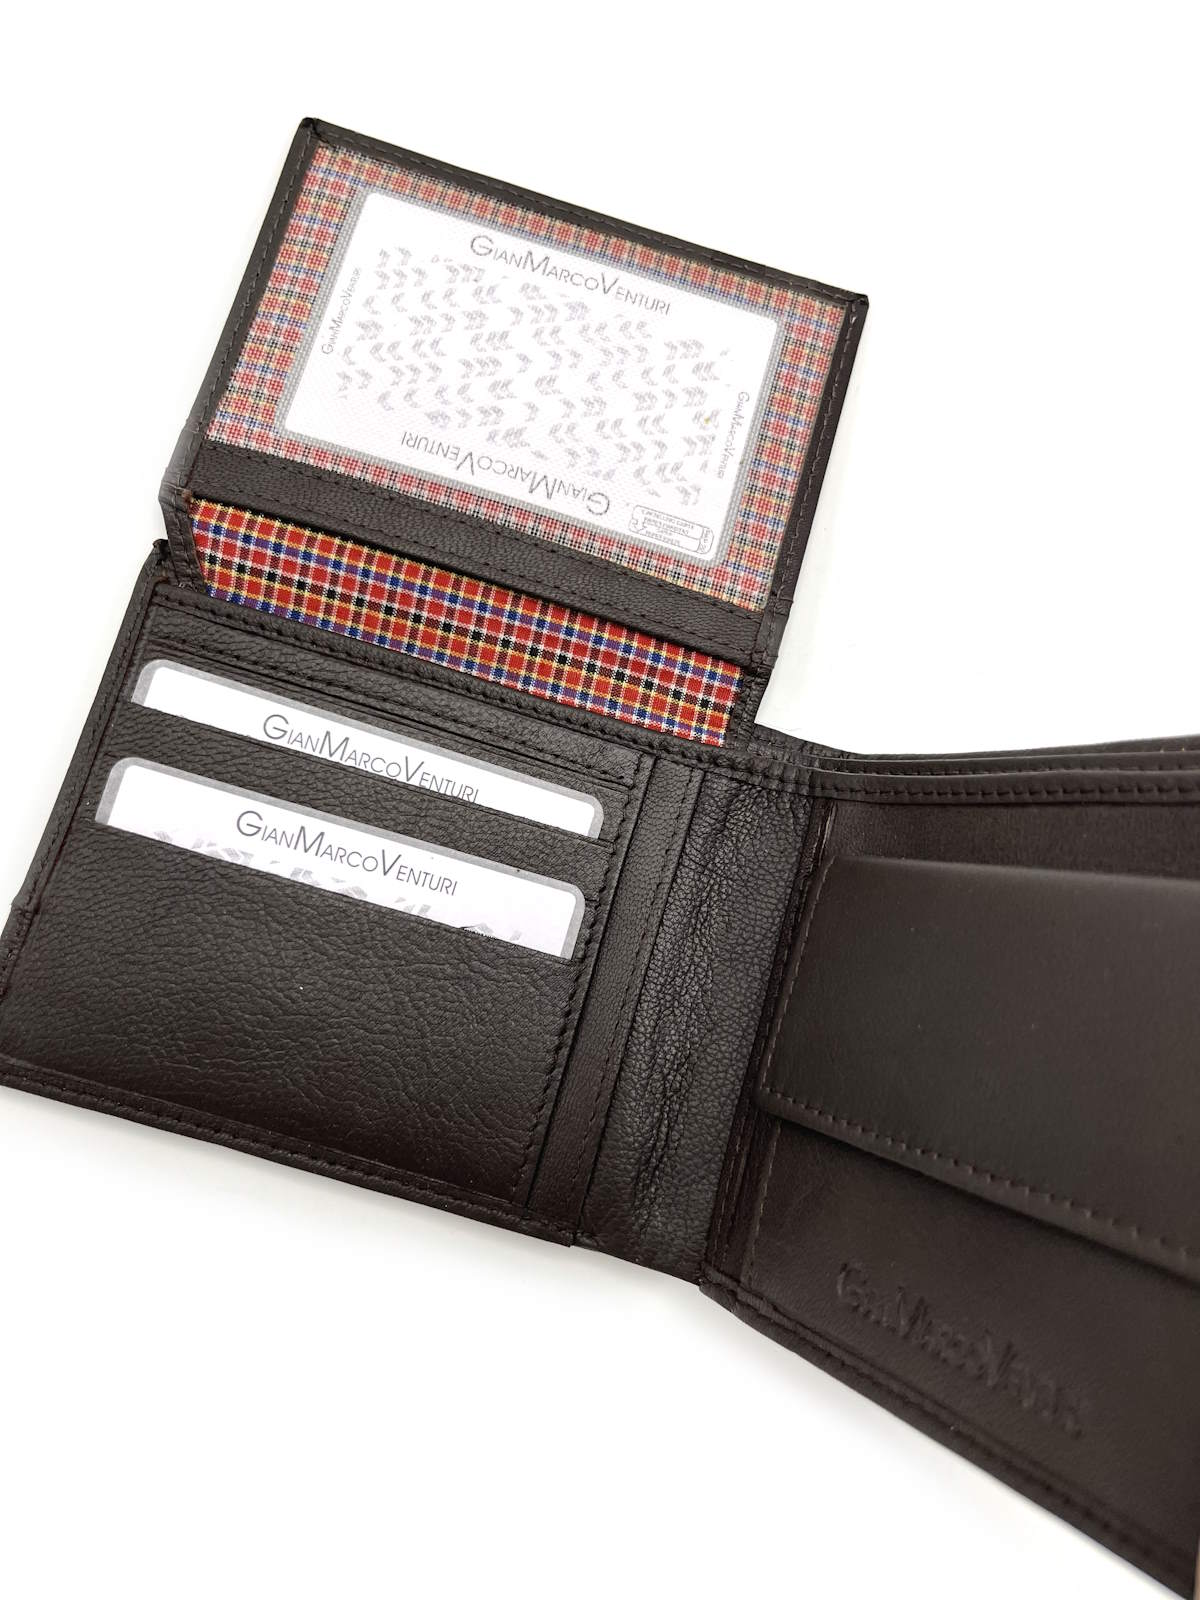 Genuine leather Wallet, Brand GMV, art. GMV4018-2